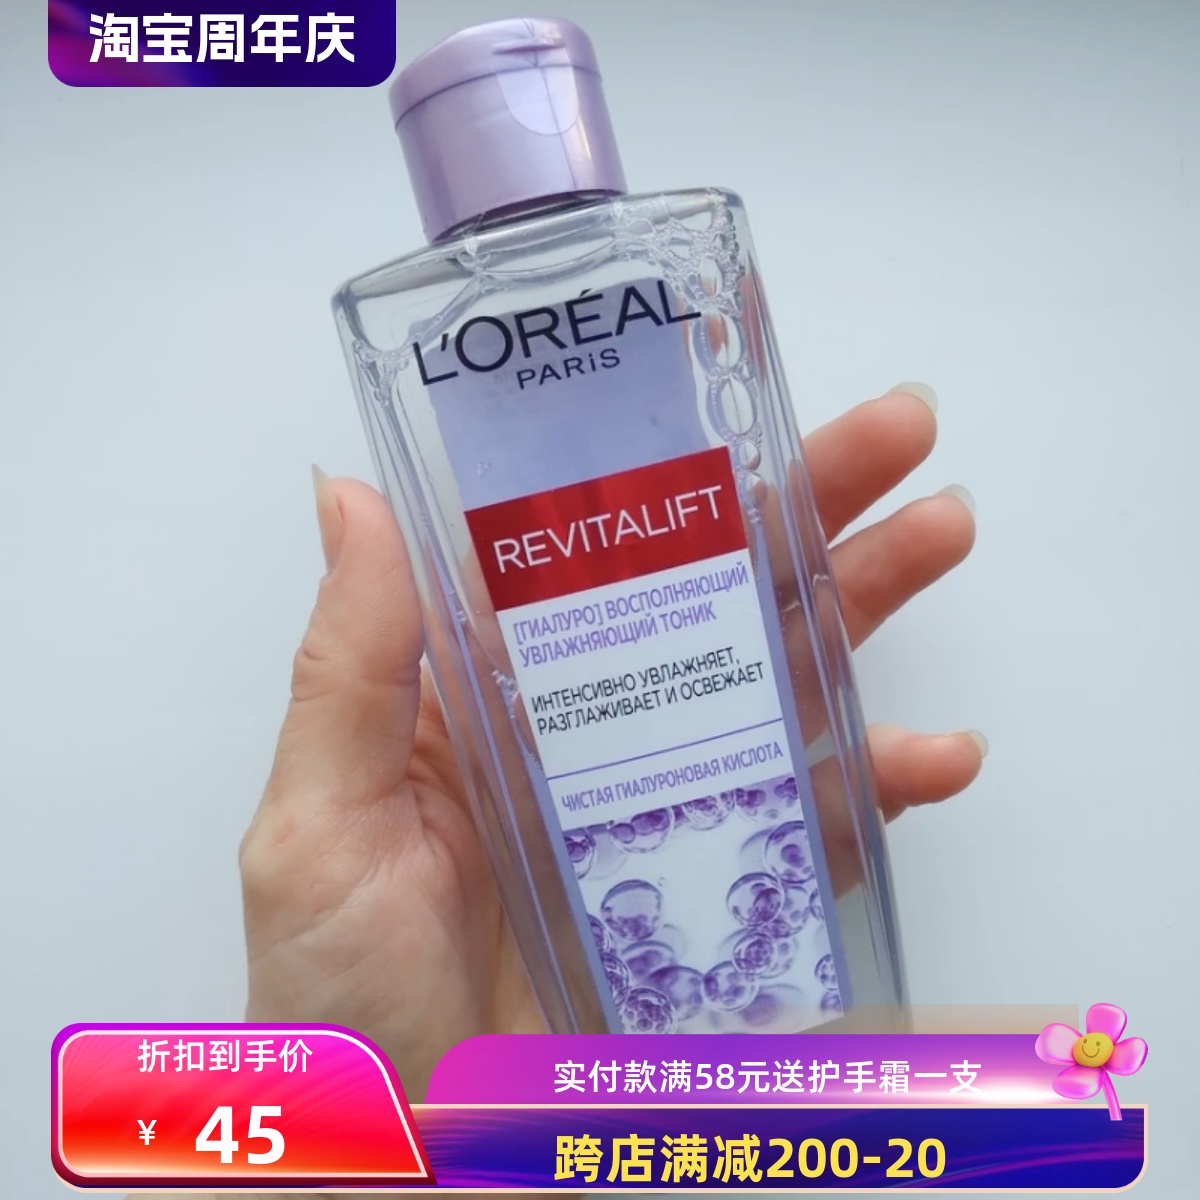 俄罗斯欧莱雅透明质酸化妆水爽肤水保湿滋润200ml所有肤质敏感肌